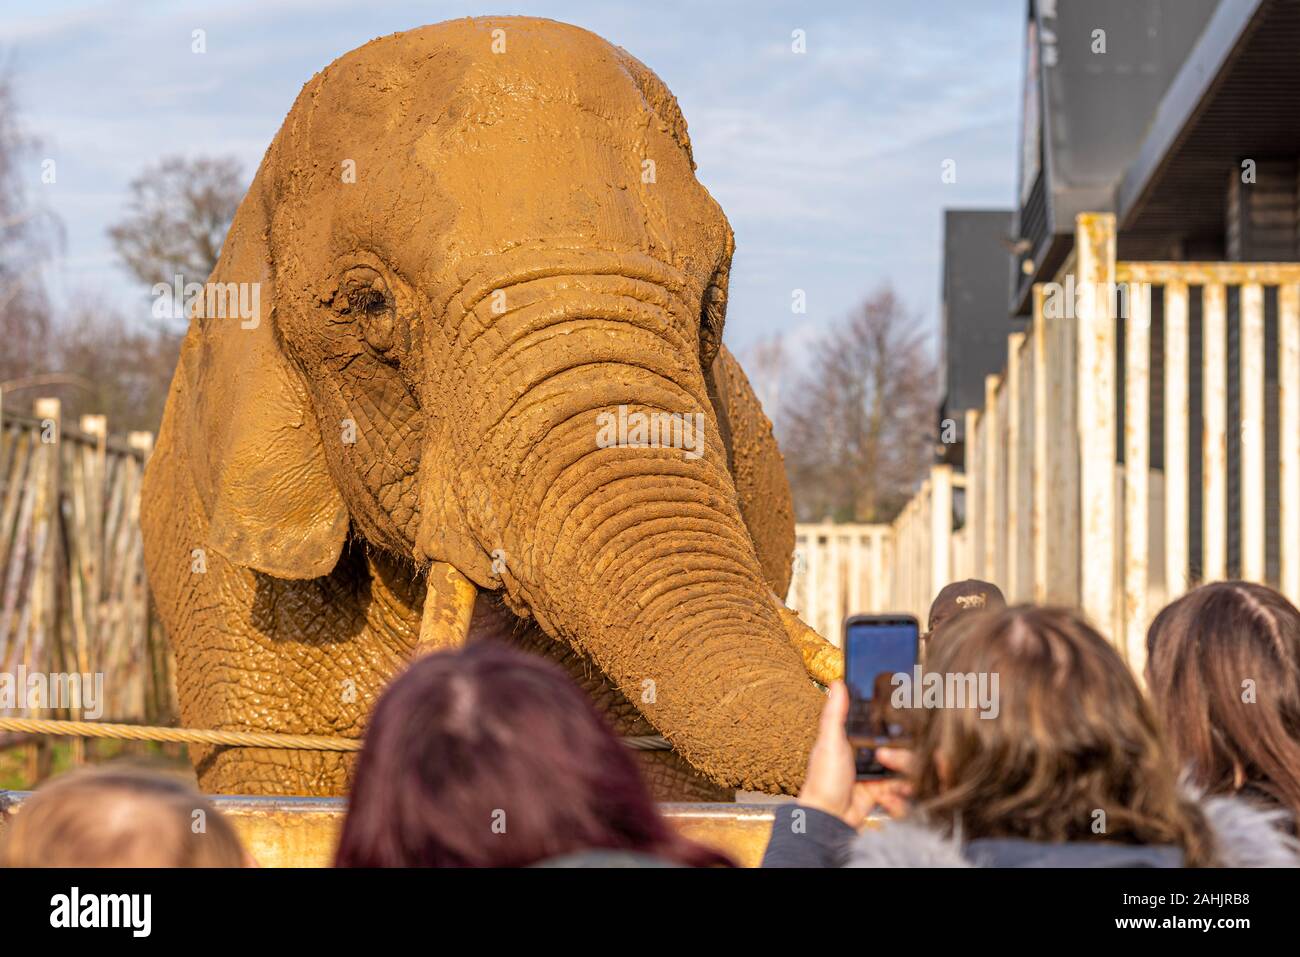 L'éléphant d'boueux au Zoo de Colchester, Essex, Royaume-Uni. Loxodonta africana. Exposition des animaux en captivité en royaume de l'éléphant. Photographie de téléphone mobile Banque D'Images